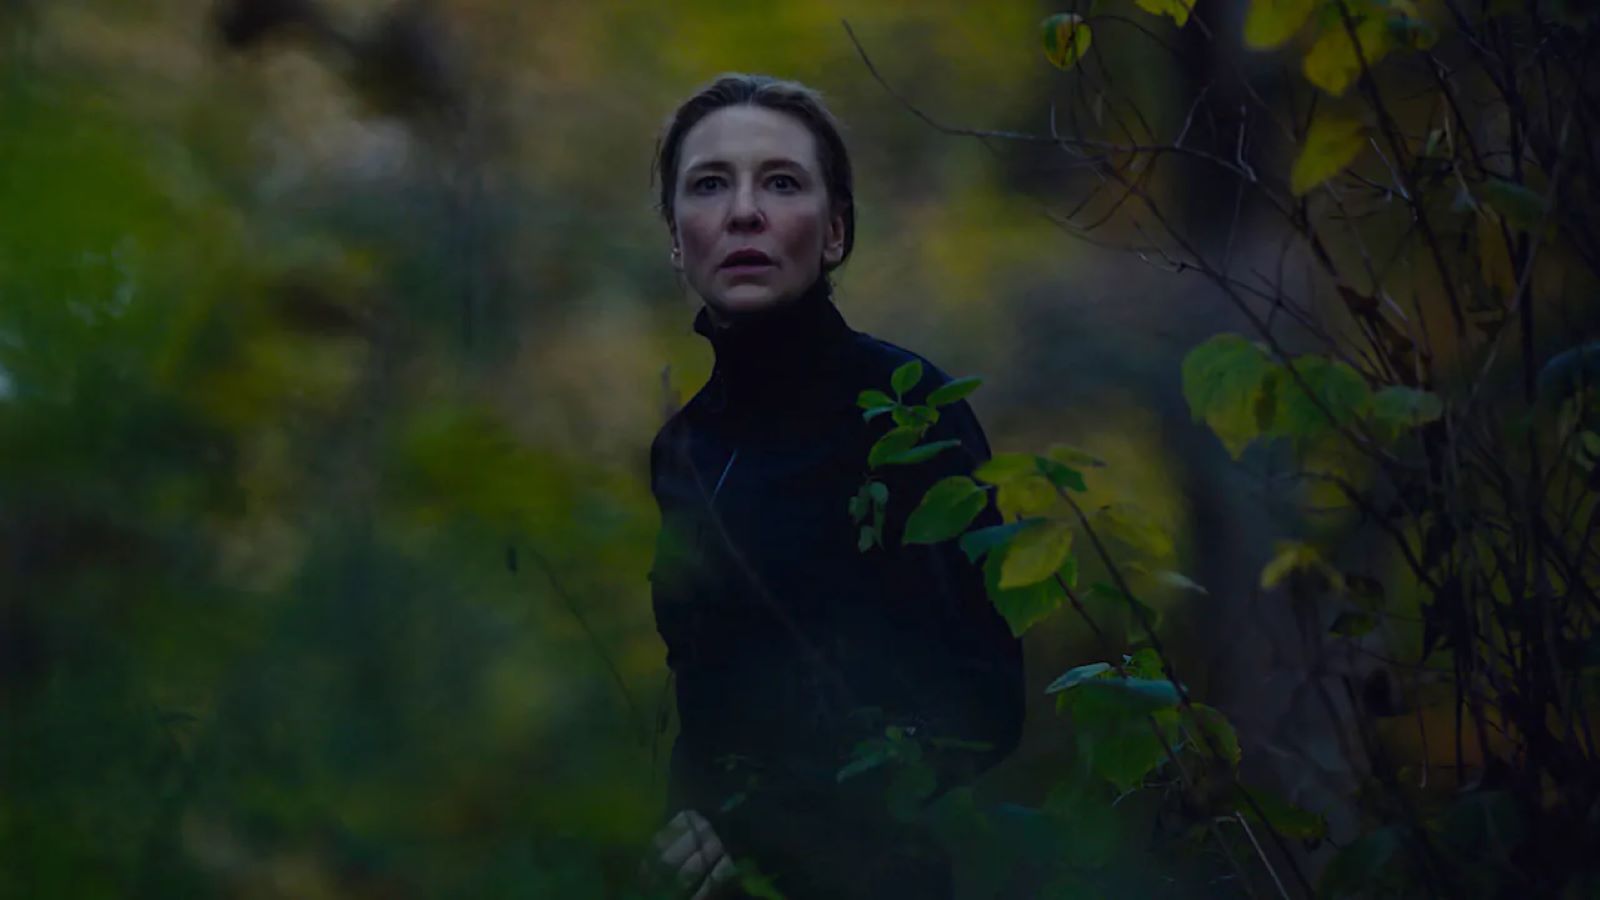 TAR, stasera in prima tv su Sky e NOW il film con Cate Blanchett: trama e cast